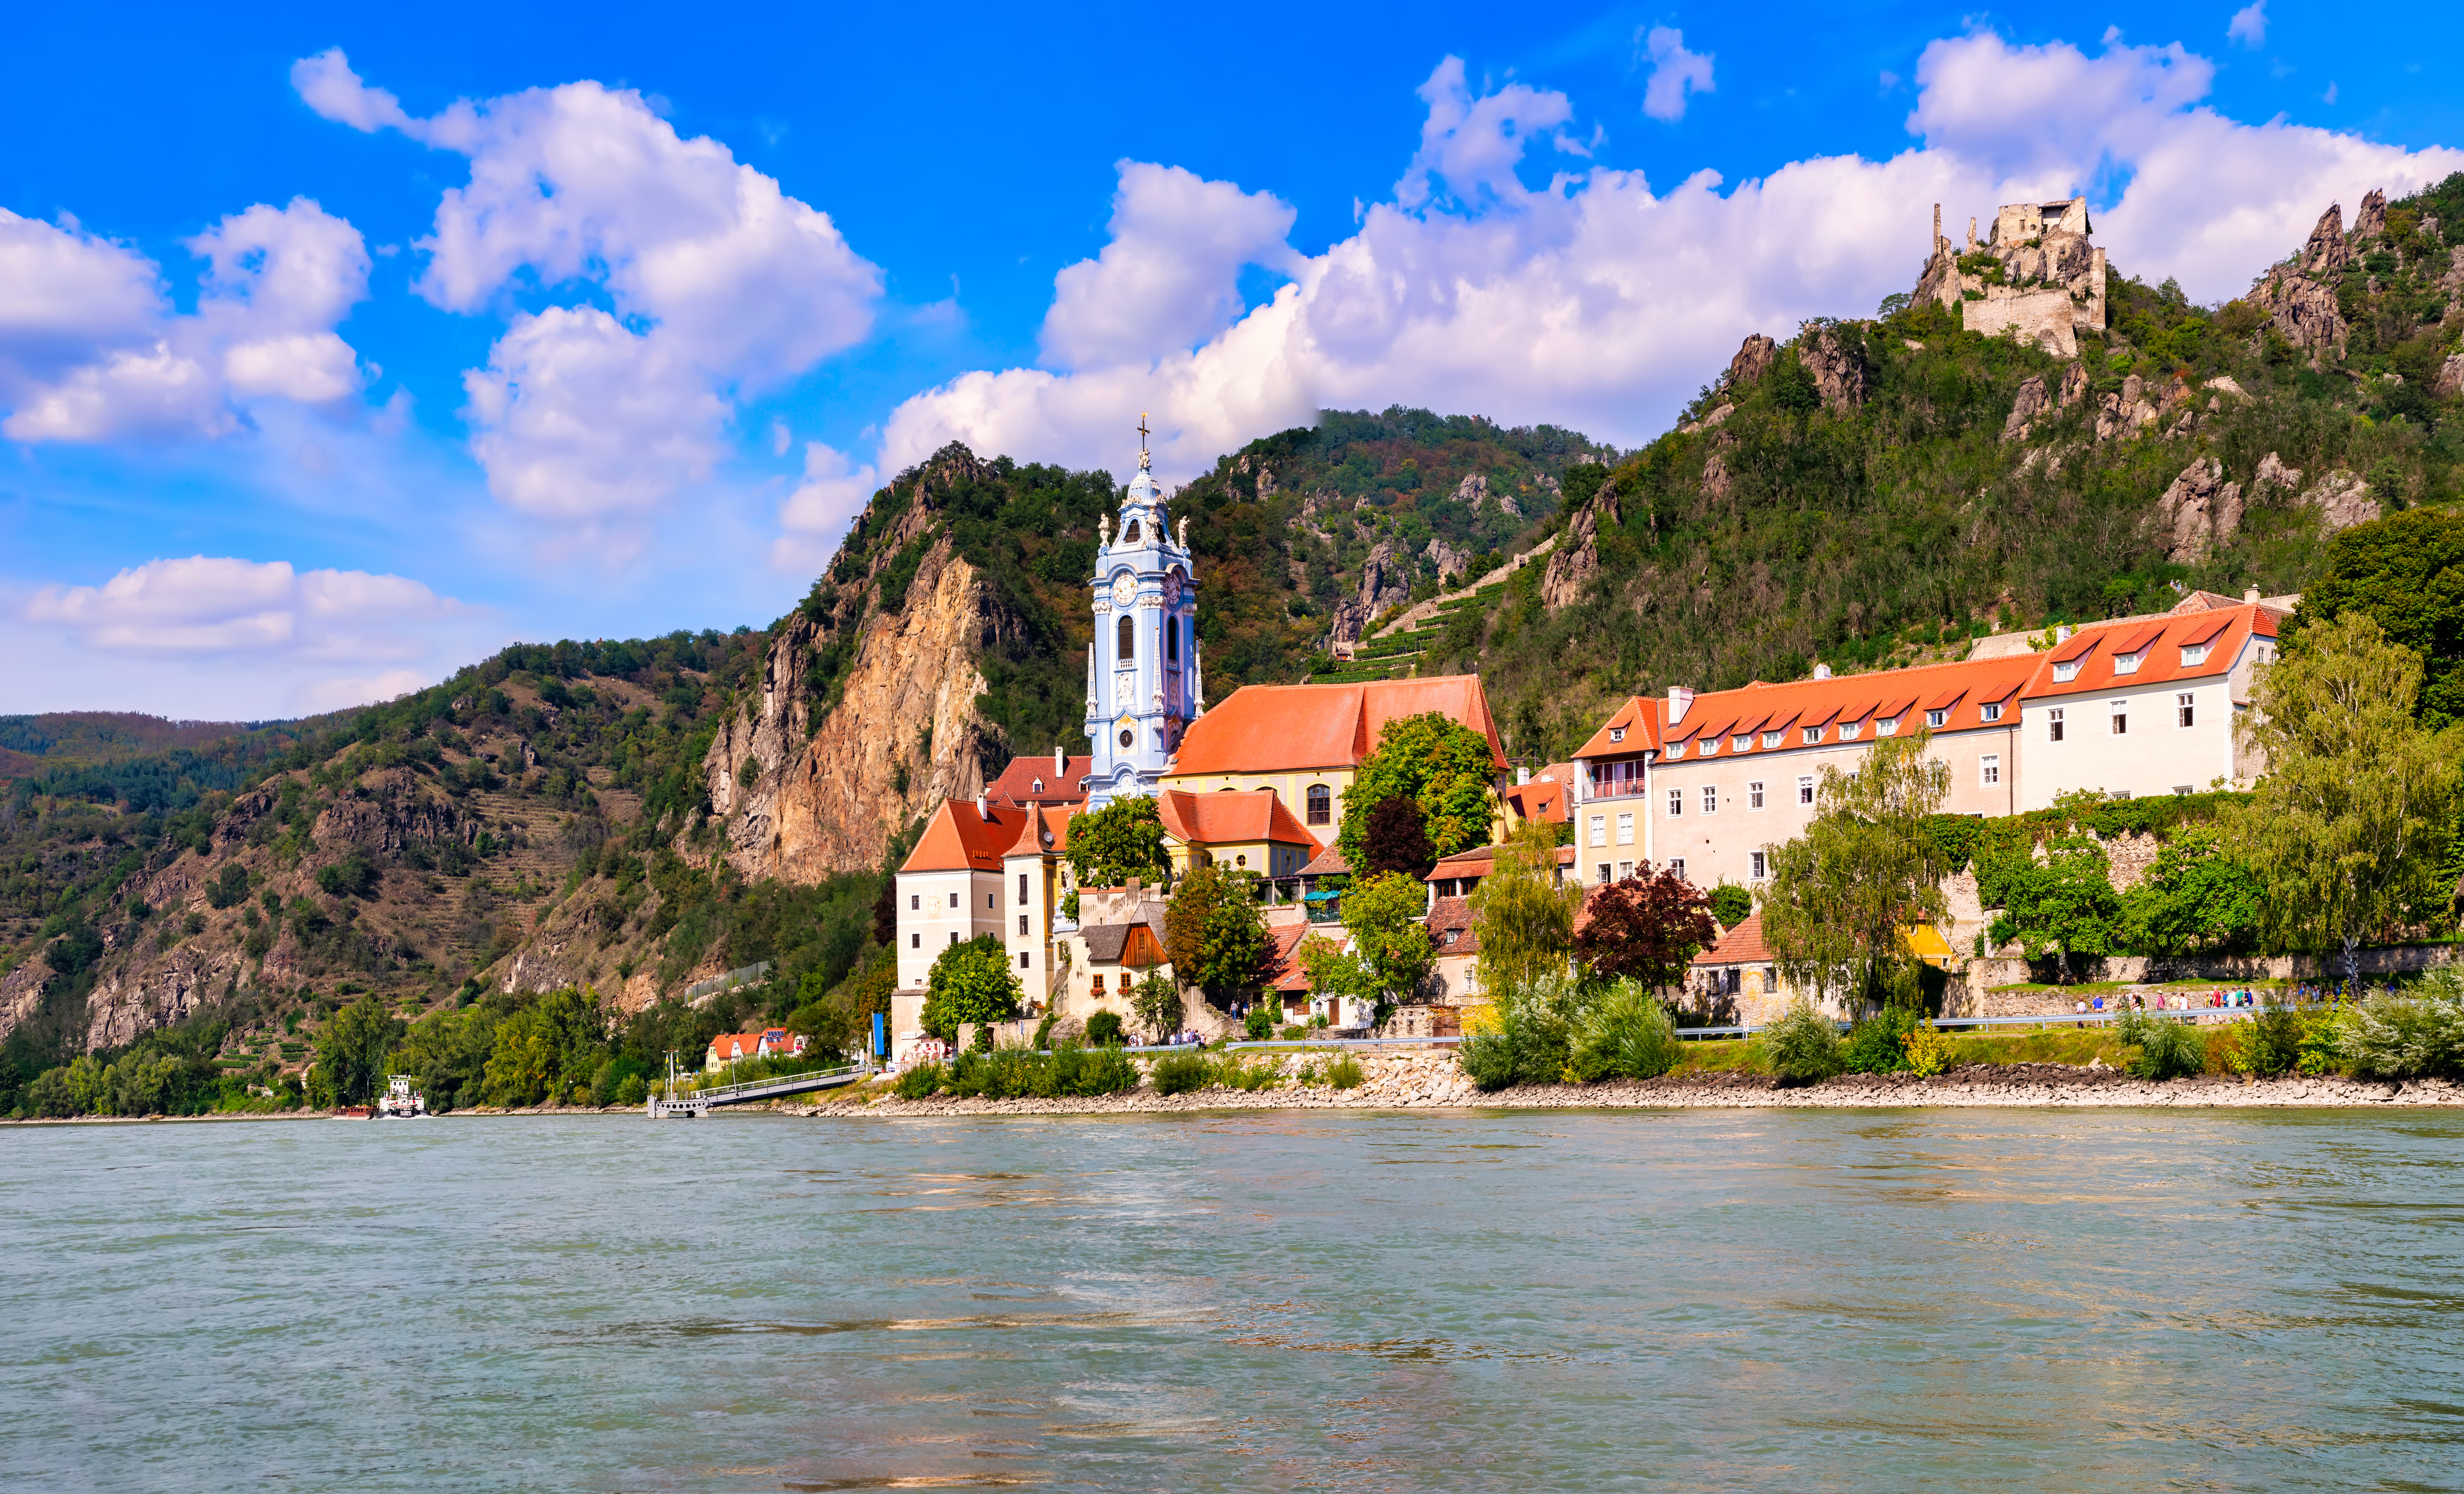 Dürnstein, cité médiévale au bord du Danube, Autriche